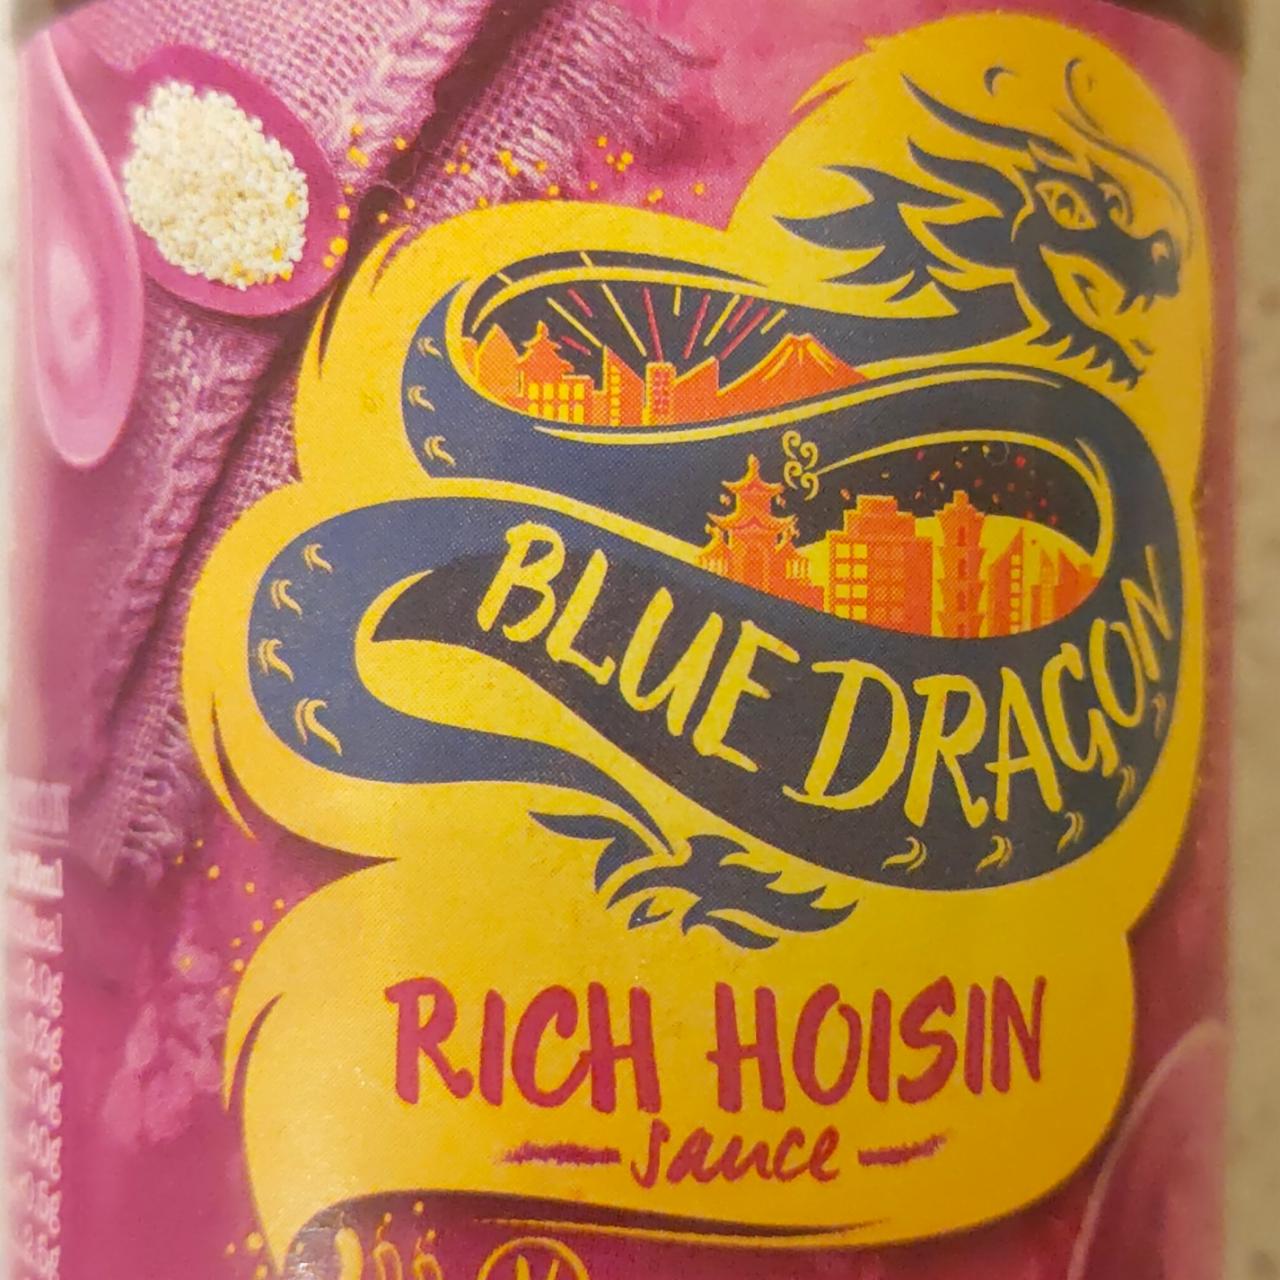 Fotografie - Rich hoisin sauce Blue Dragon